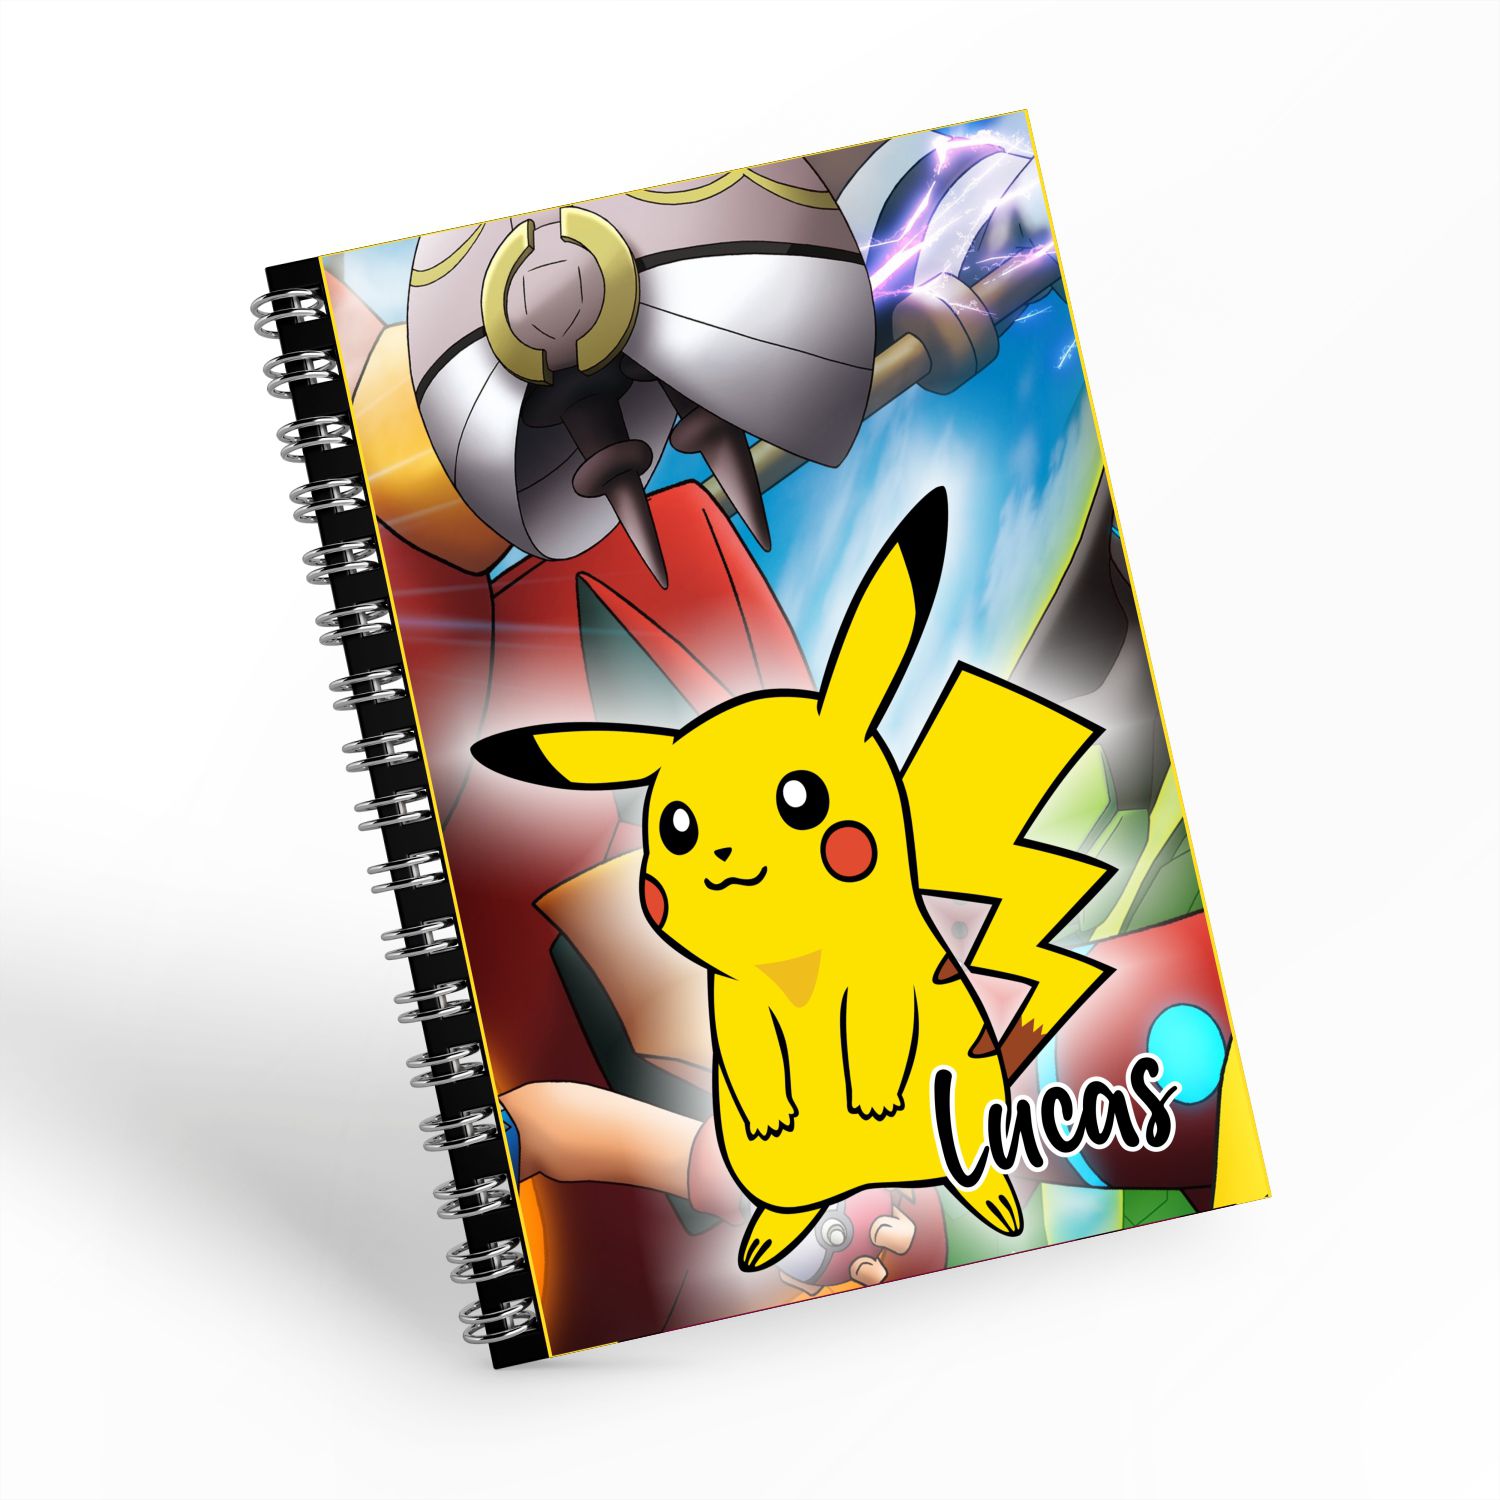 Arquivos pokemon - Curso de Desenho - Eu que Desenhei